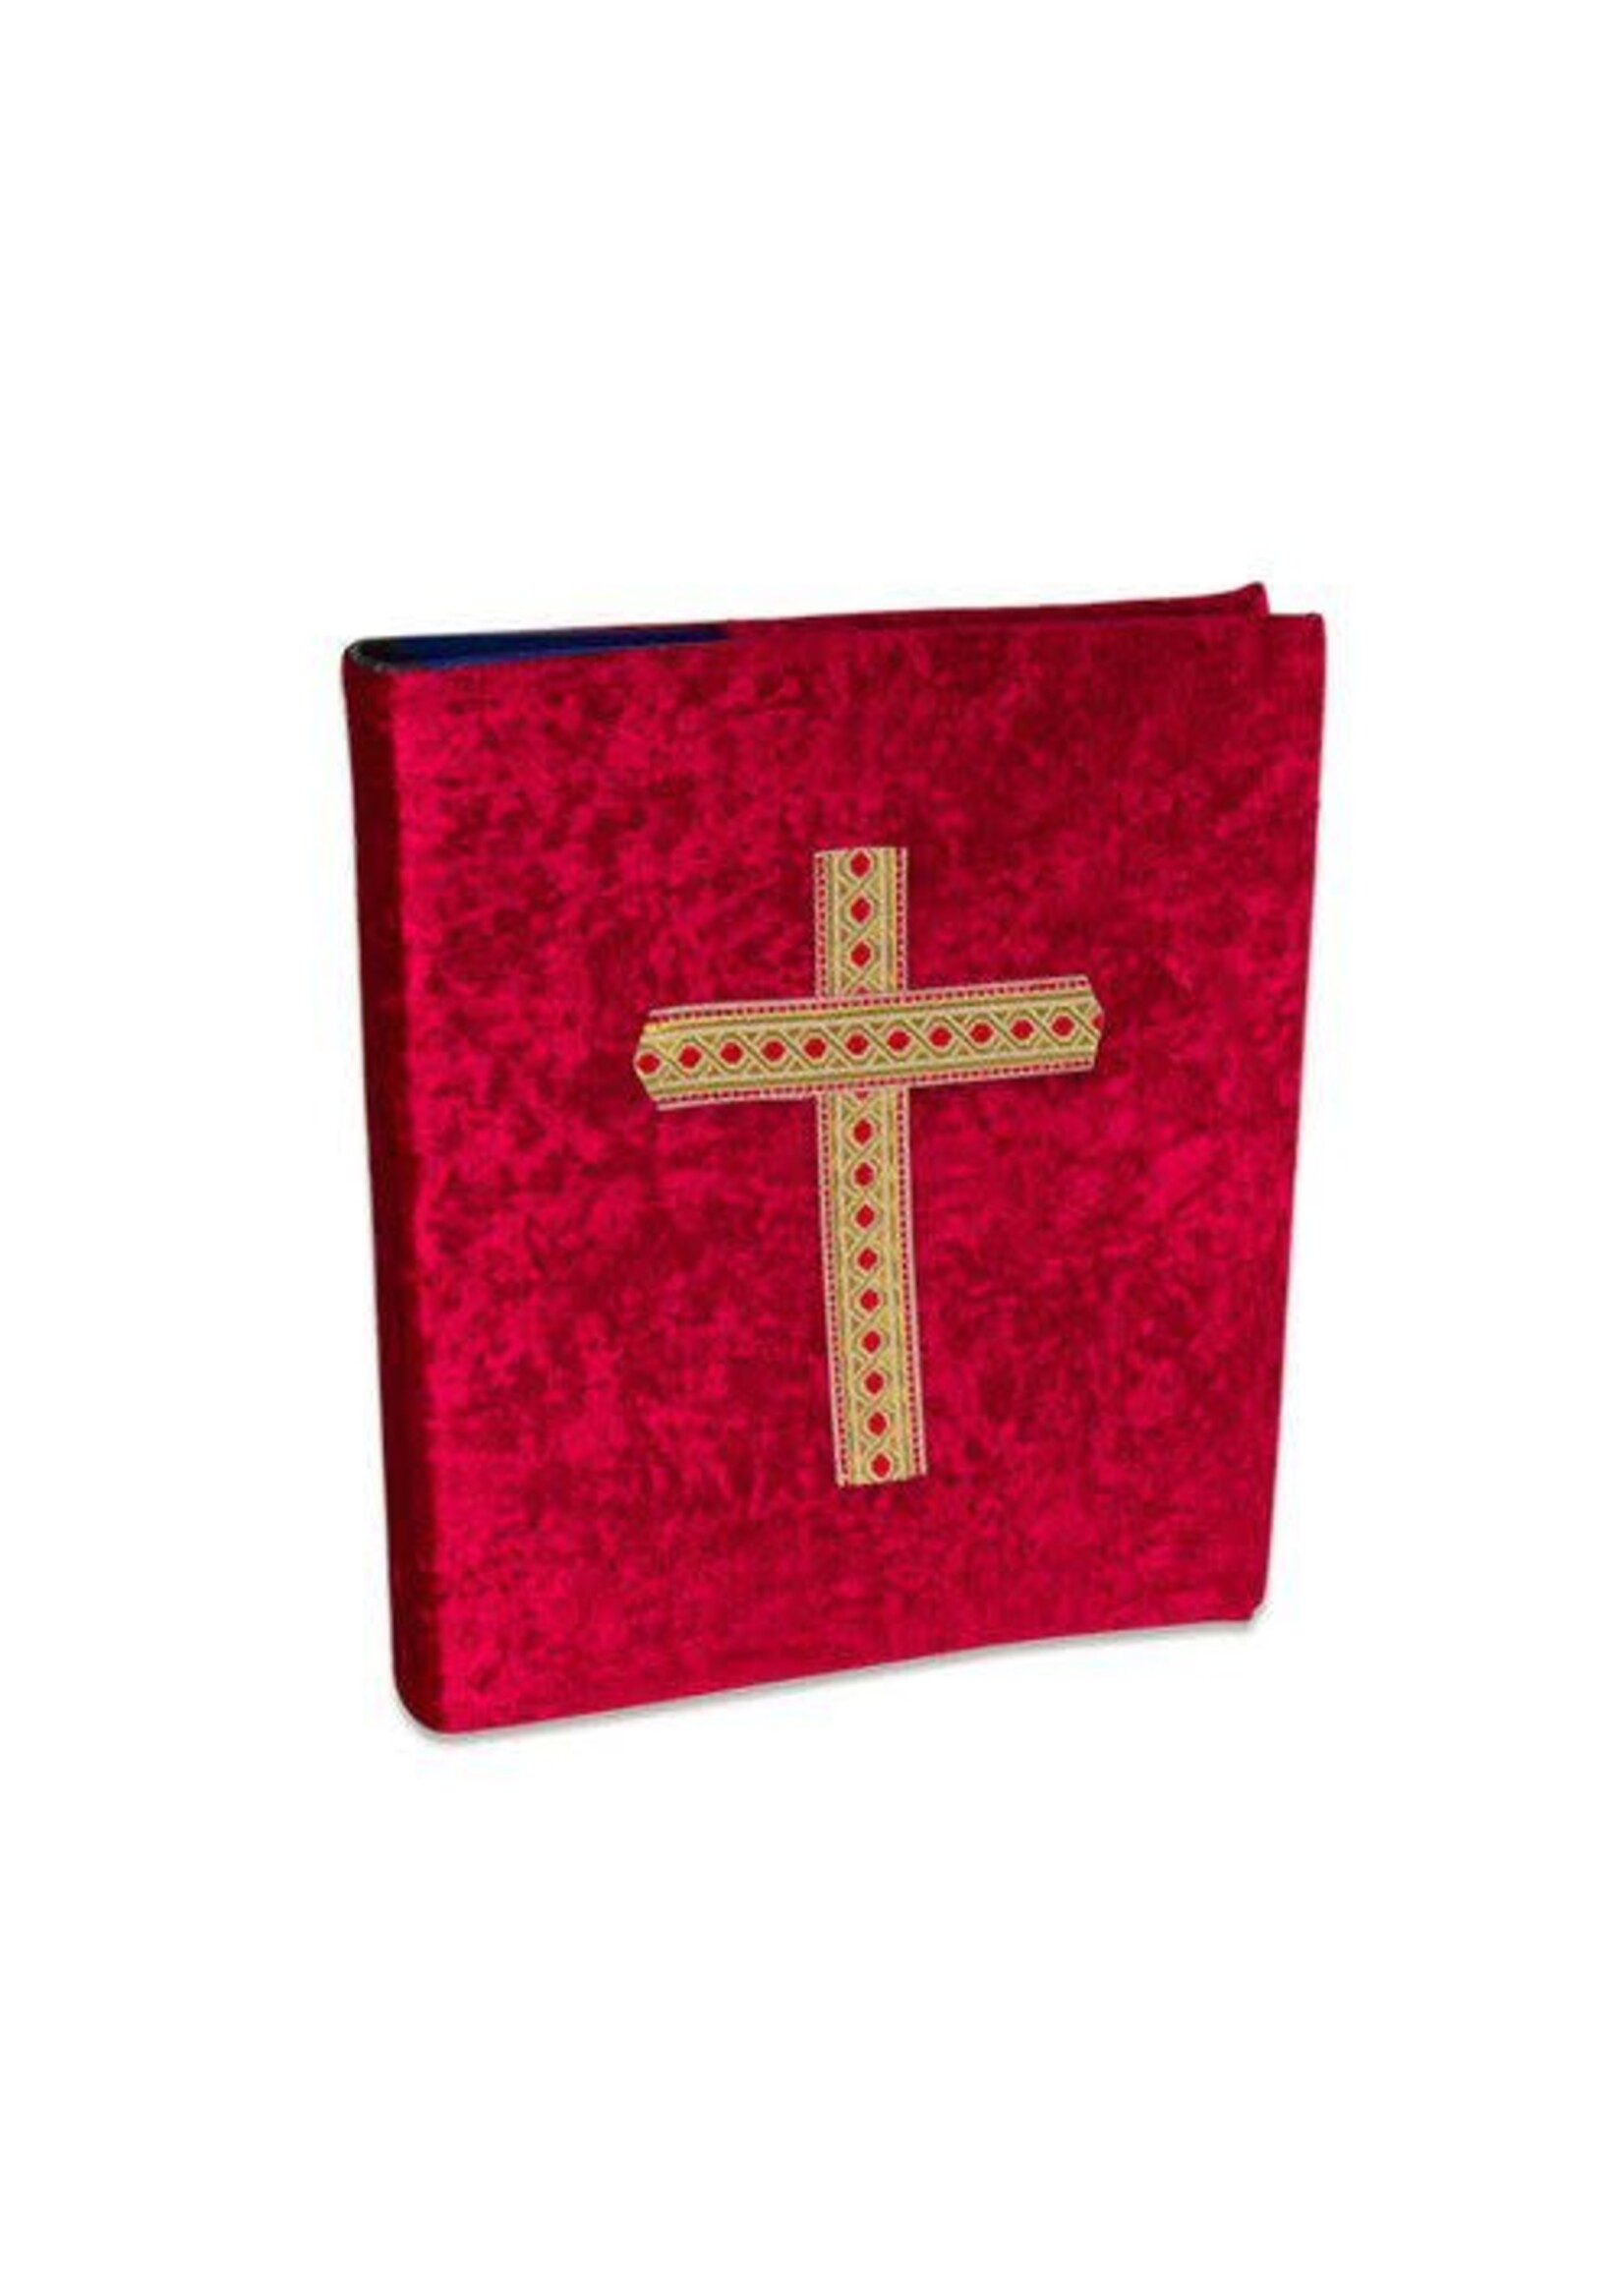 Feestkleding Breda Sinterklaas boekomslag met kruis